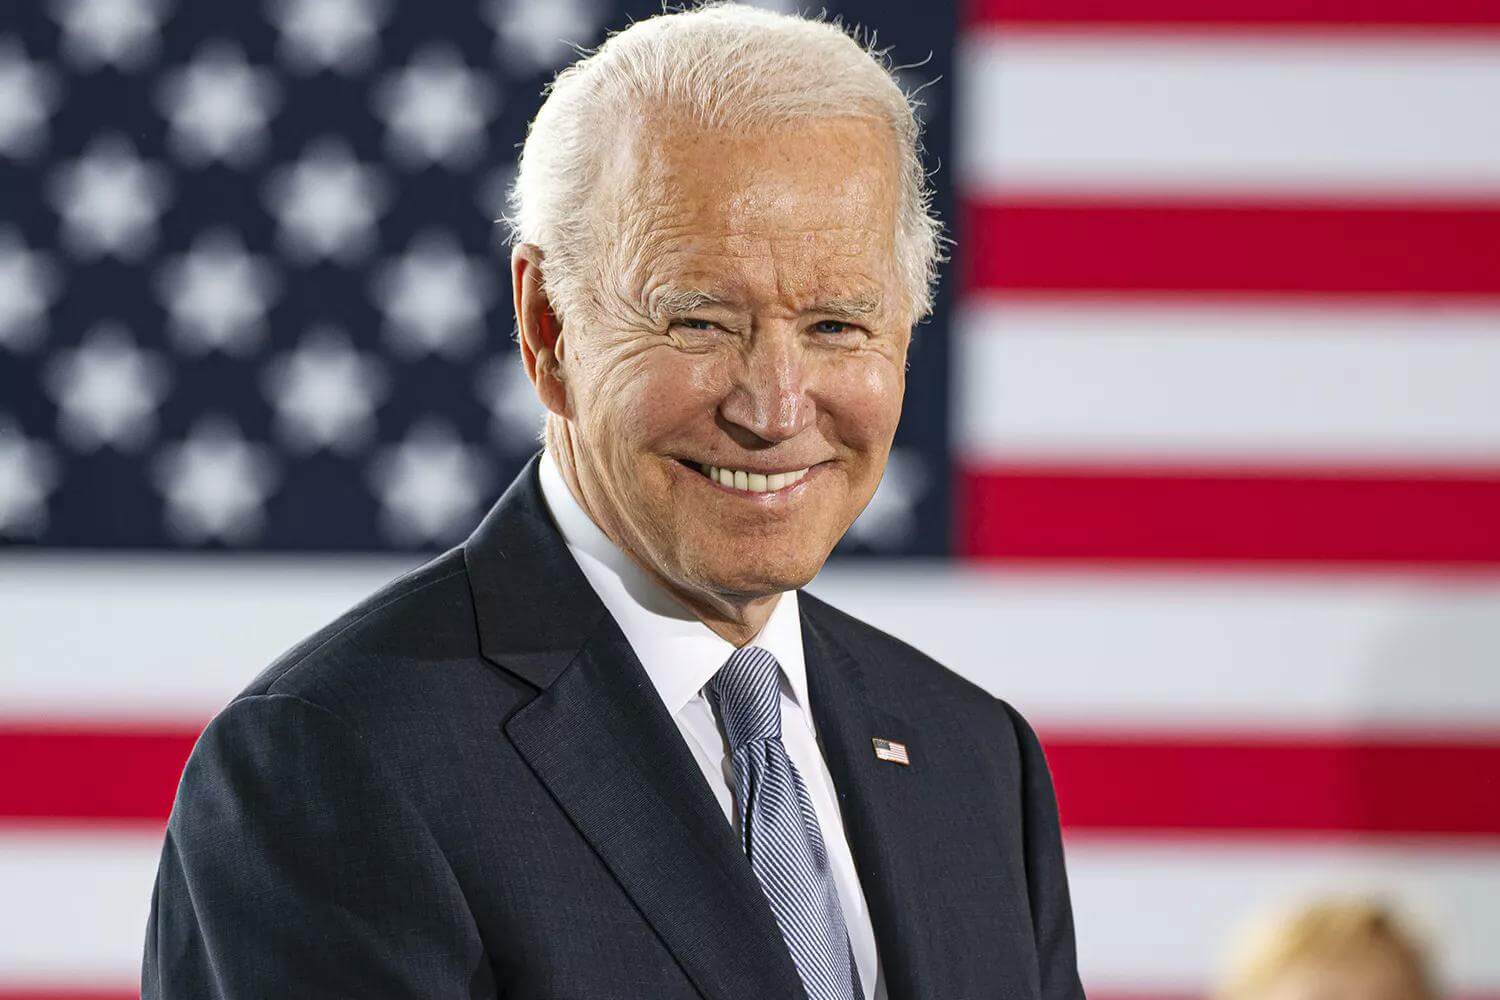 Joe-Biden-Democratic